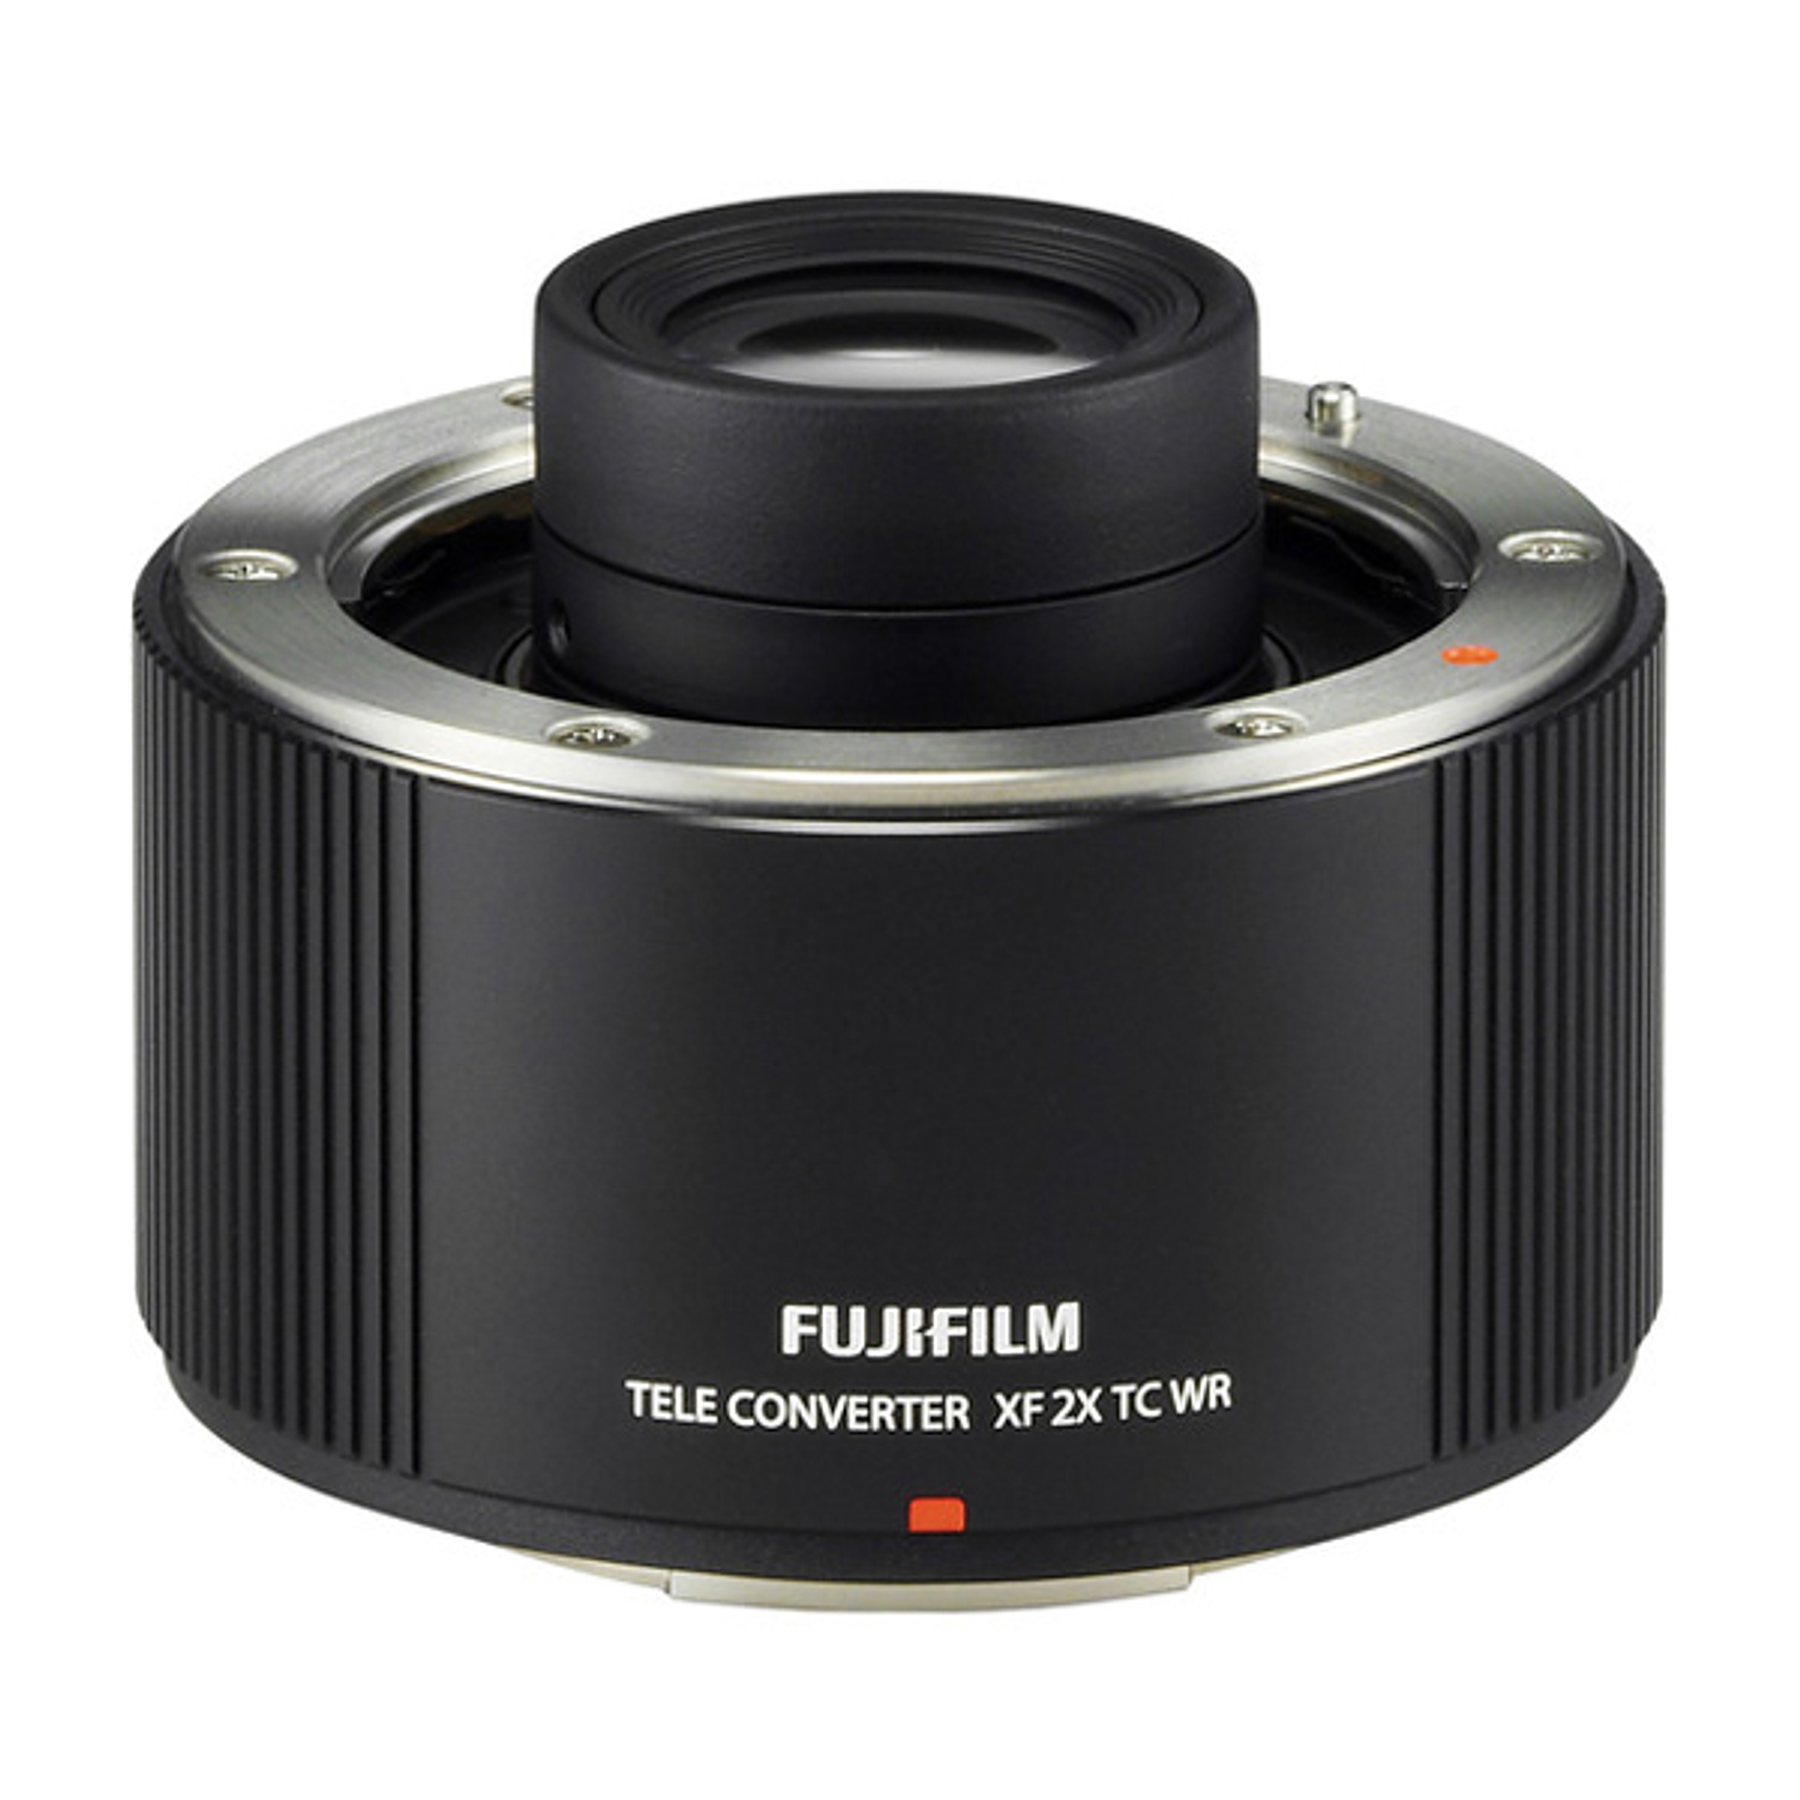 Fujifilm TELECONVERTER XF 2x  TC WR 